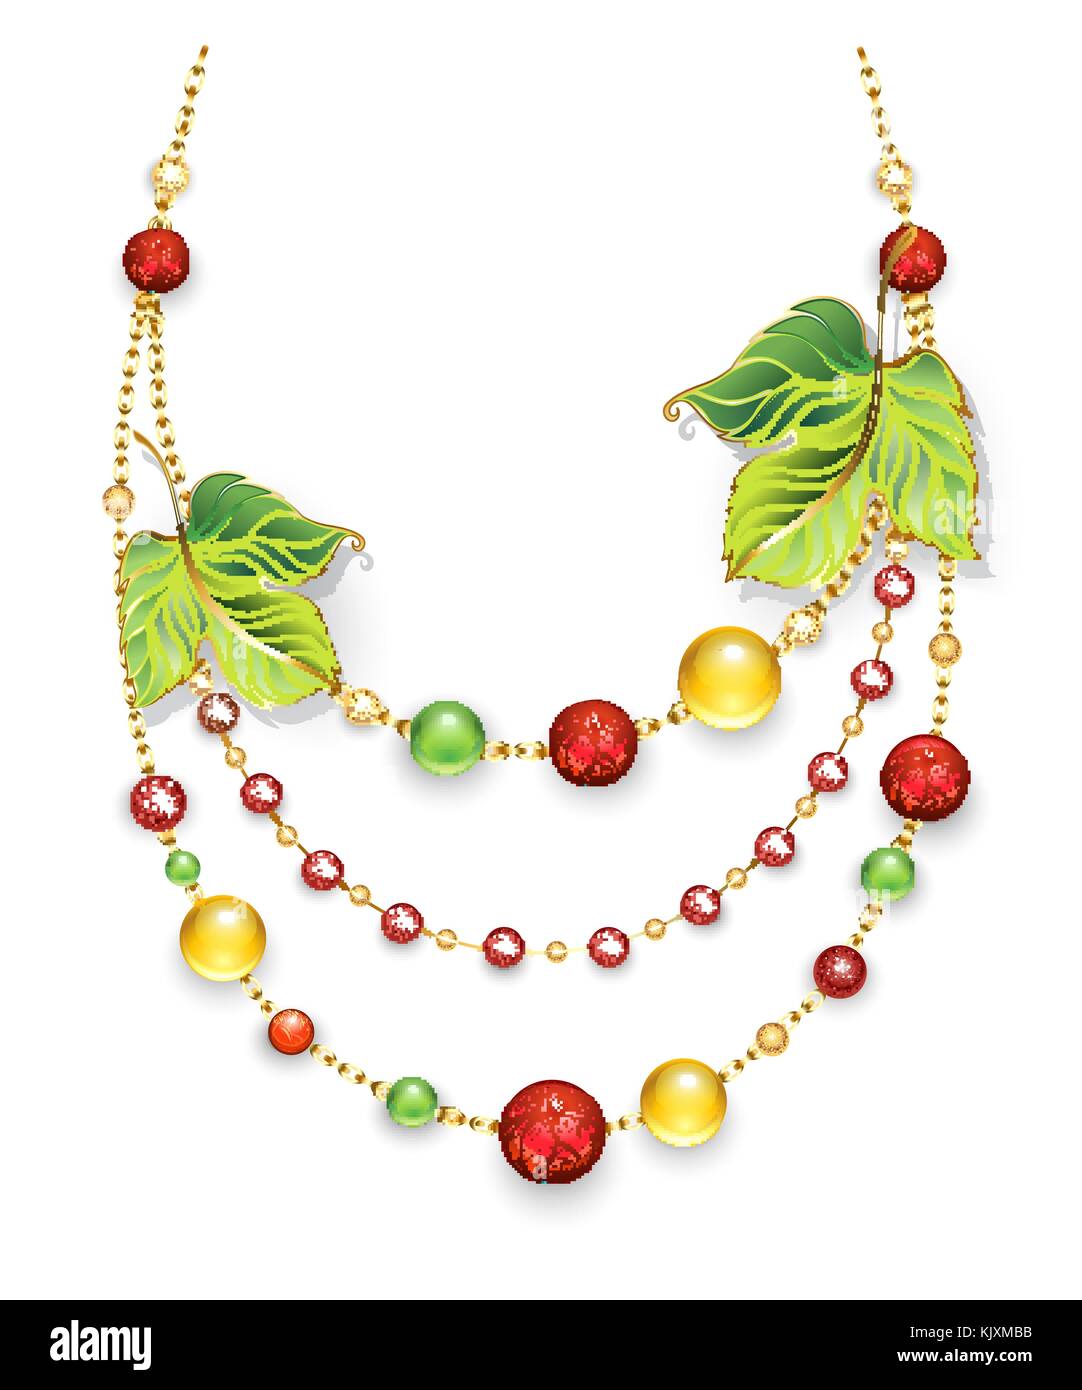 Collana in oro catene, decorato con verde, foglie di autunno e verde, rosso, arancione a cordoni di pietra preziosa su uno sfondo bianco. progettazione Illustrazione Vettoriale